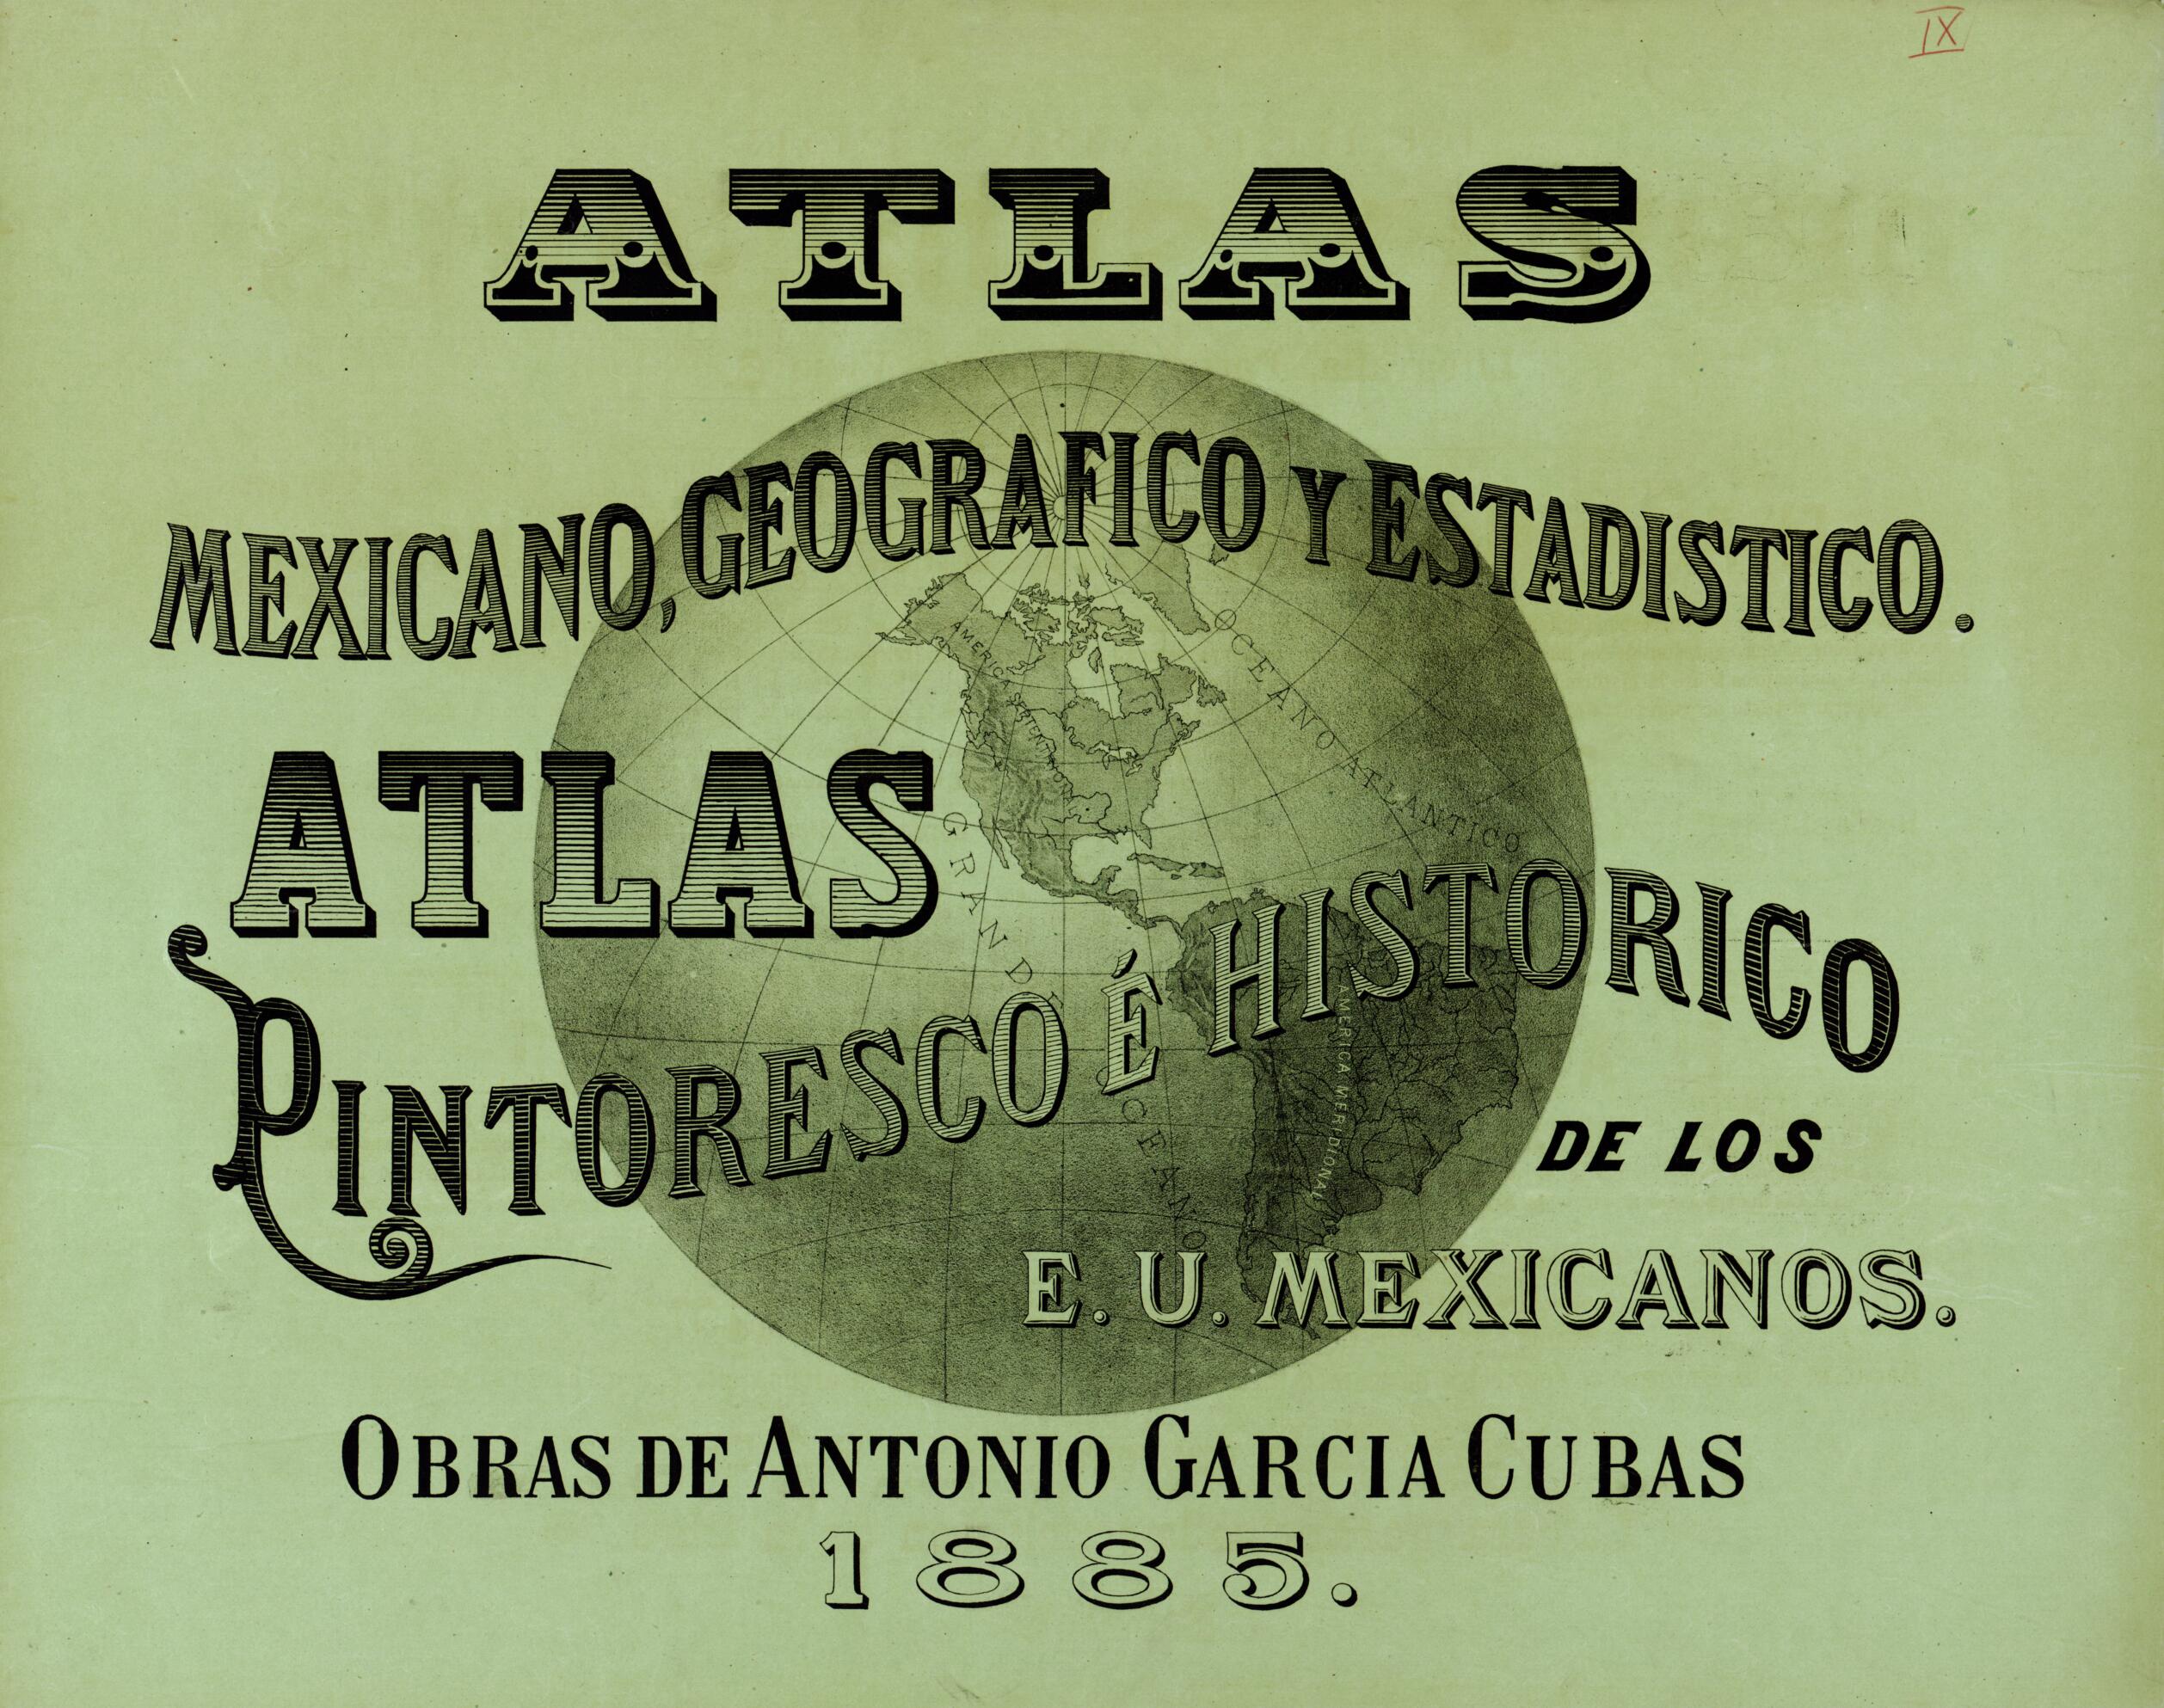 This old map of Atlas Pintoresco é Histórico De Los Estados Unidos Mexicanos from 1885 was created by Antonio García Cubas in 1885